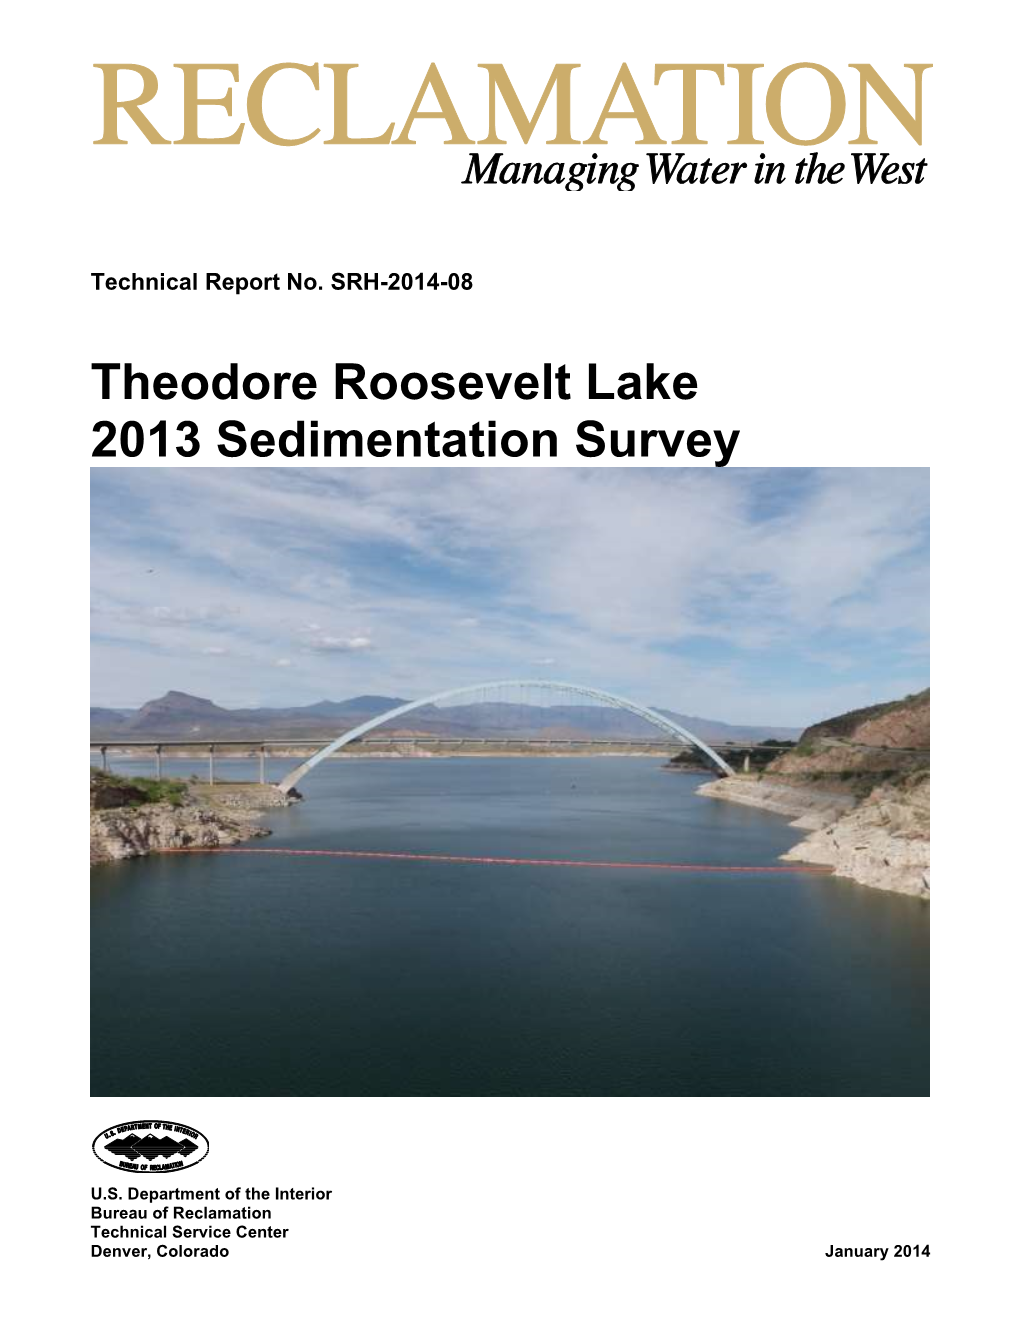 Theodore Roosevelt Lake 2013 Sedimentation Survey